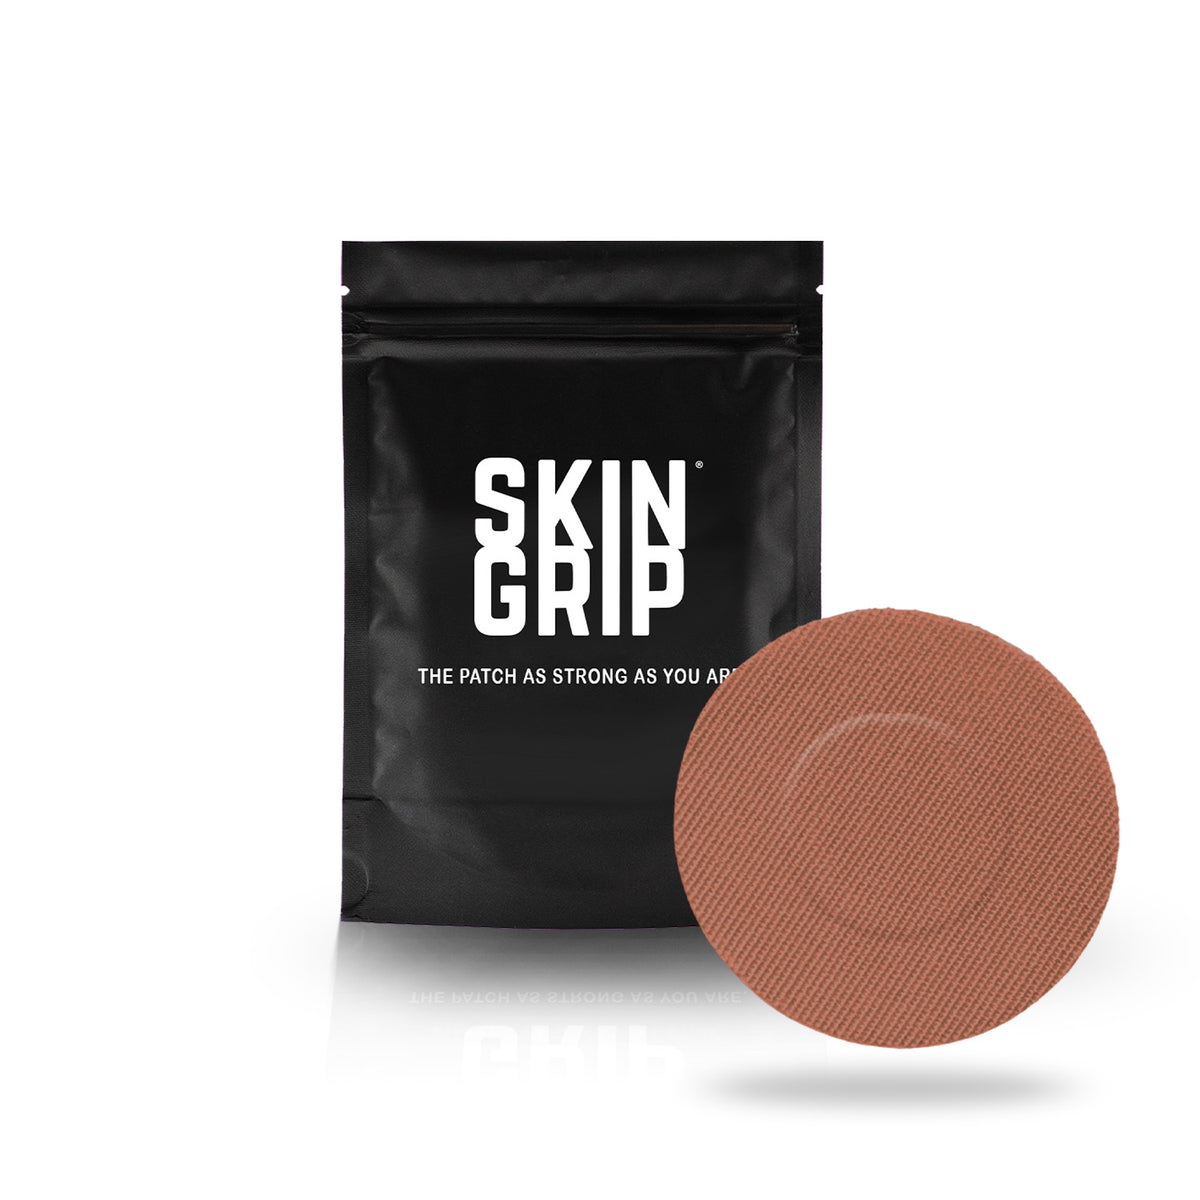 Skin Grip Original - Dexcom G7 Adhesive Patches